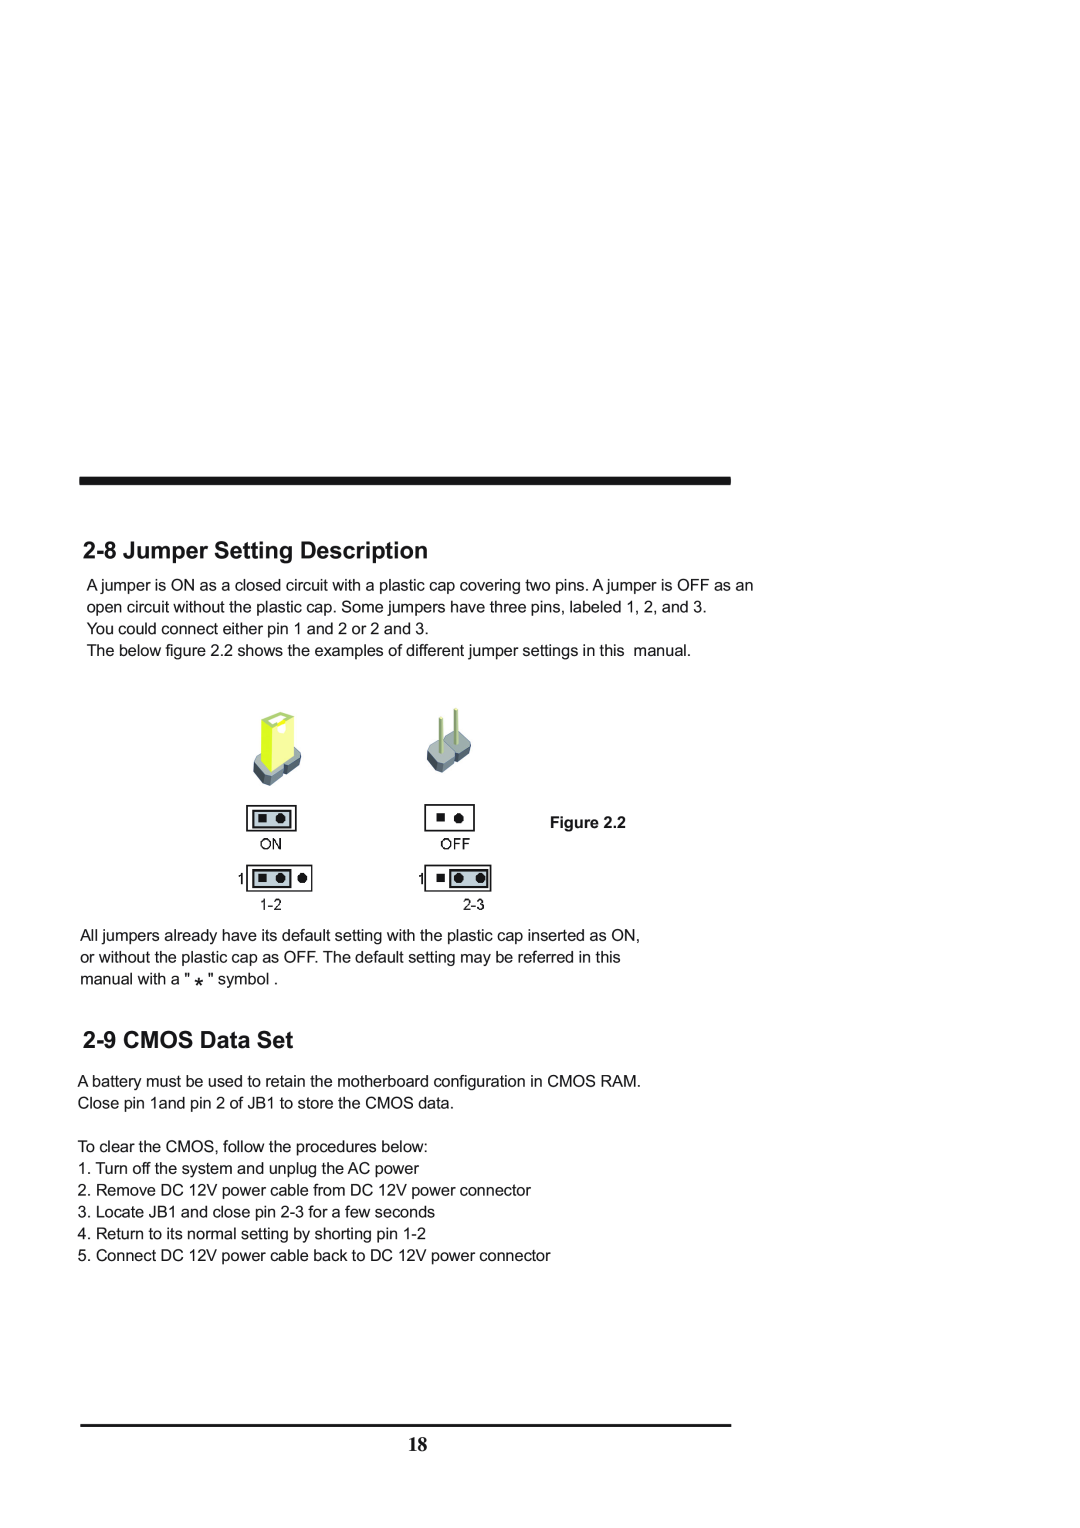 Intel CV702A, CV700A manual 2-8Jumper Setting Description, 2-9CMOS Data Set, Figure 